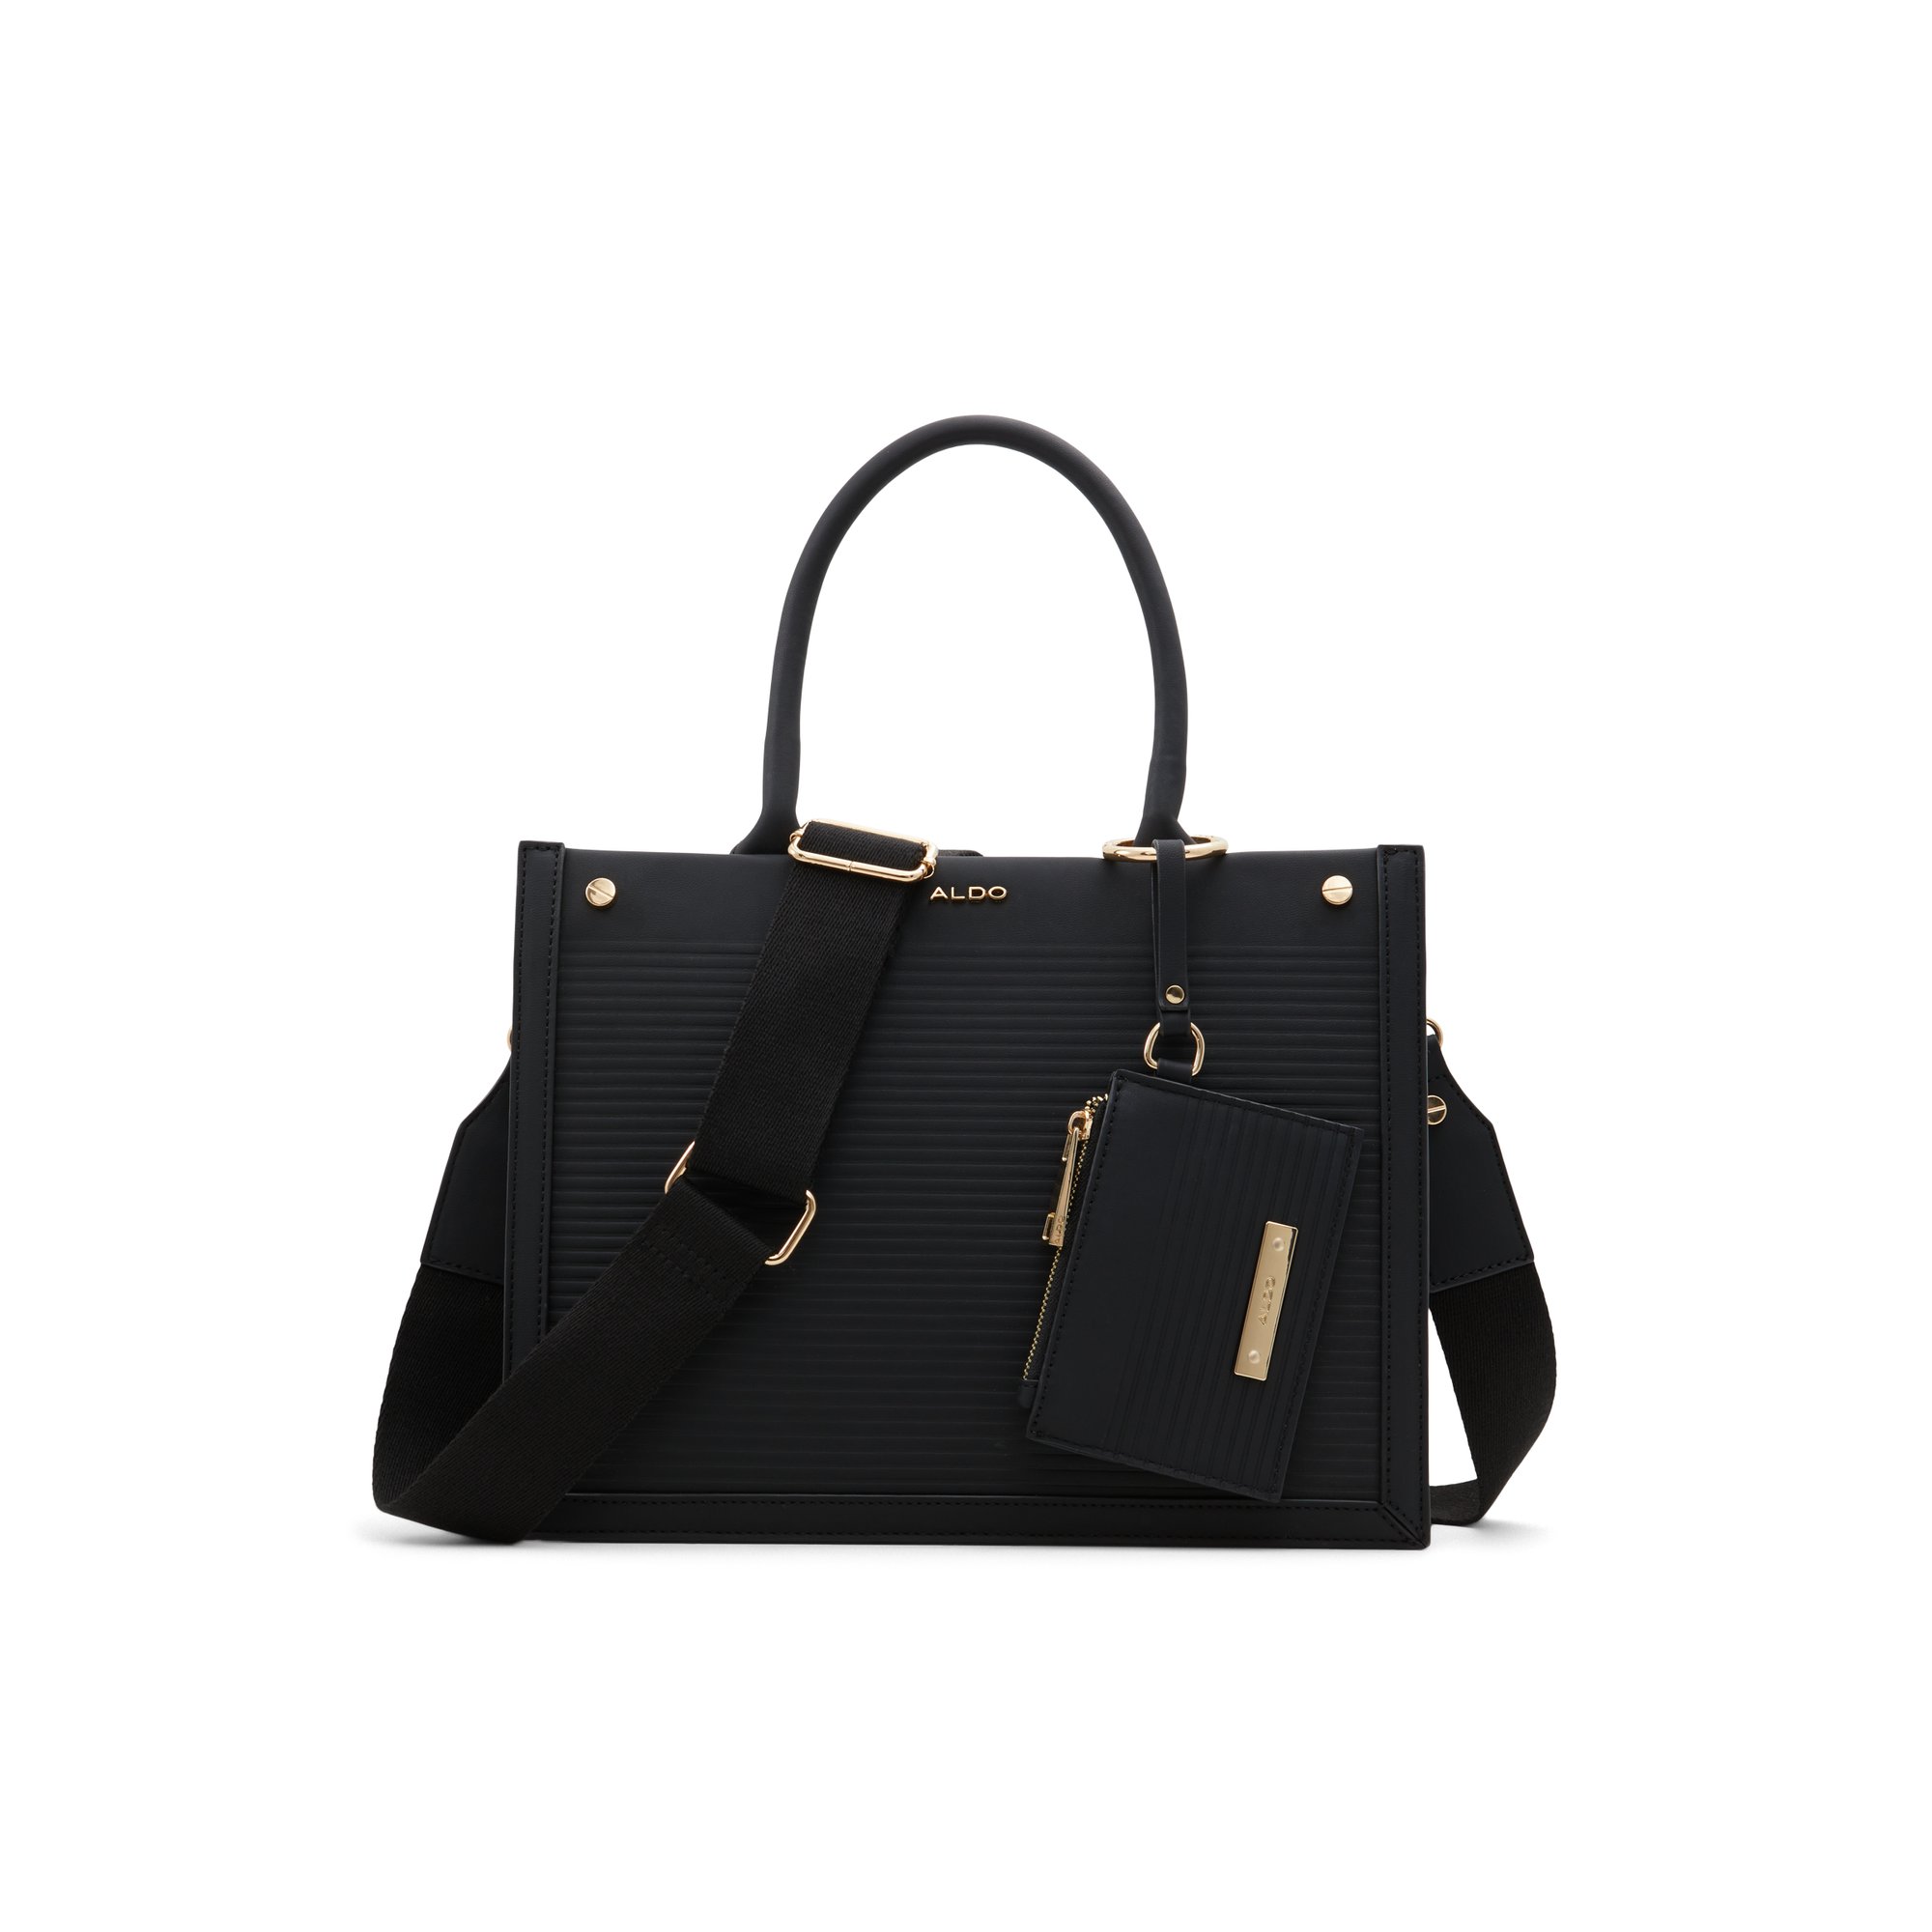 ALDO Daspias - Women's Tote Handbag - Black